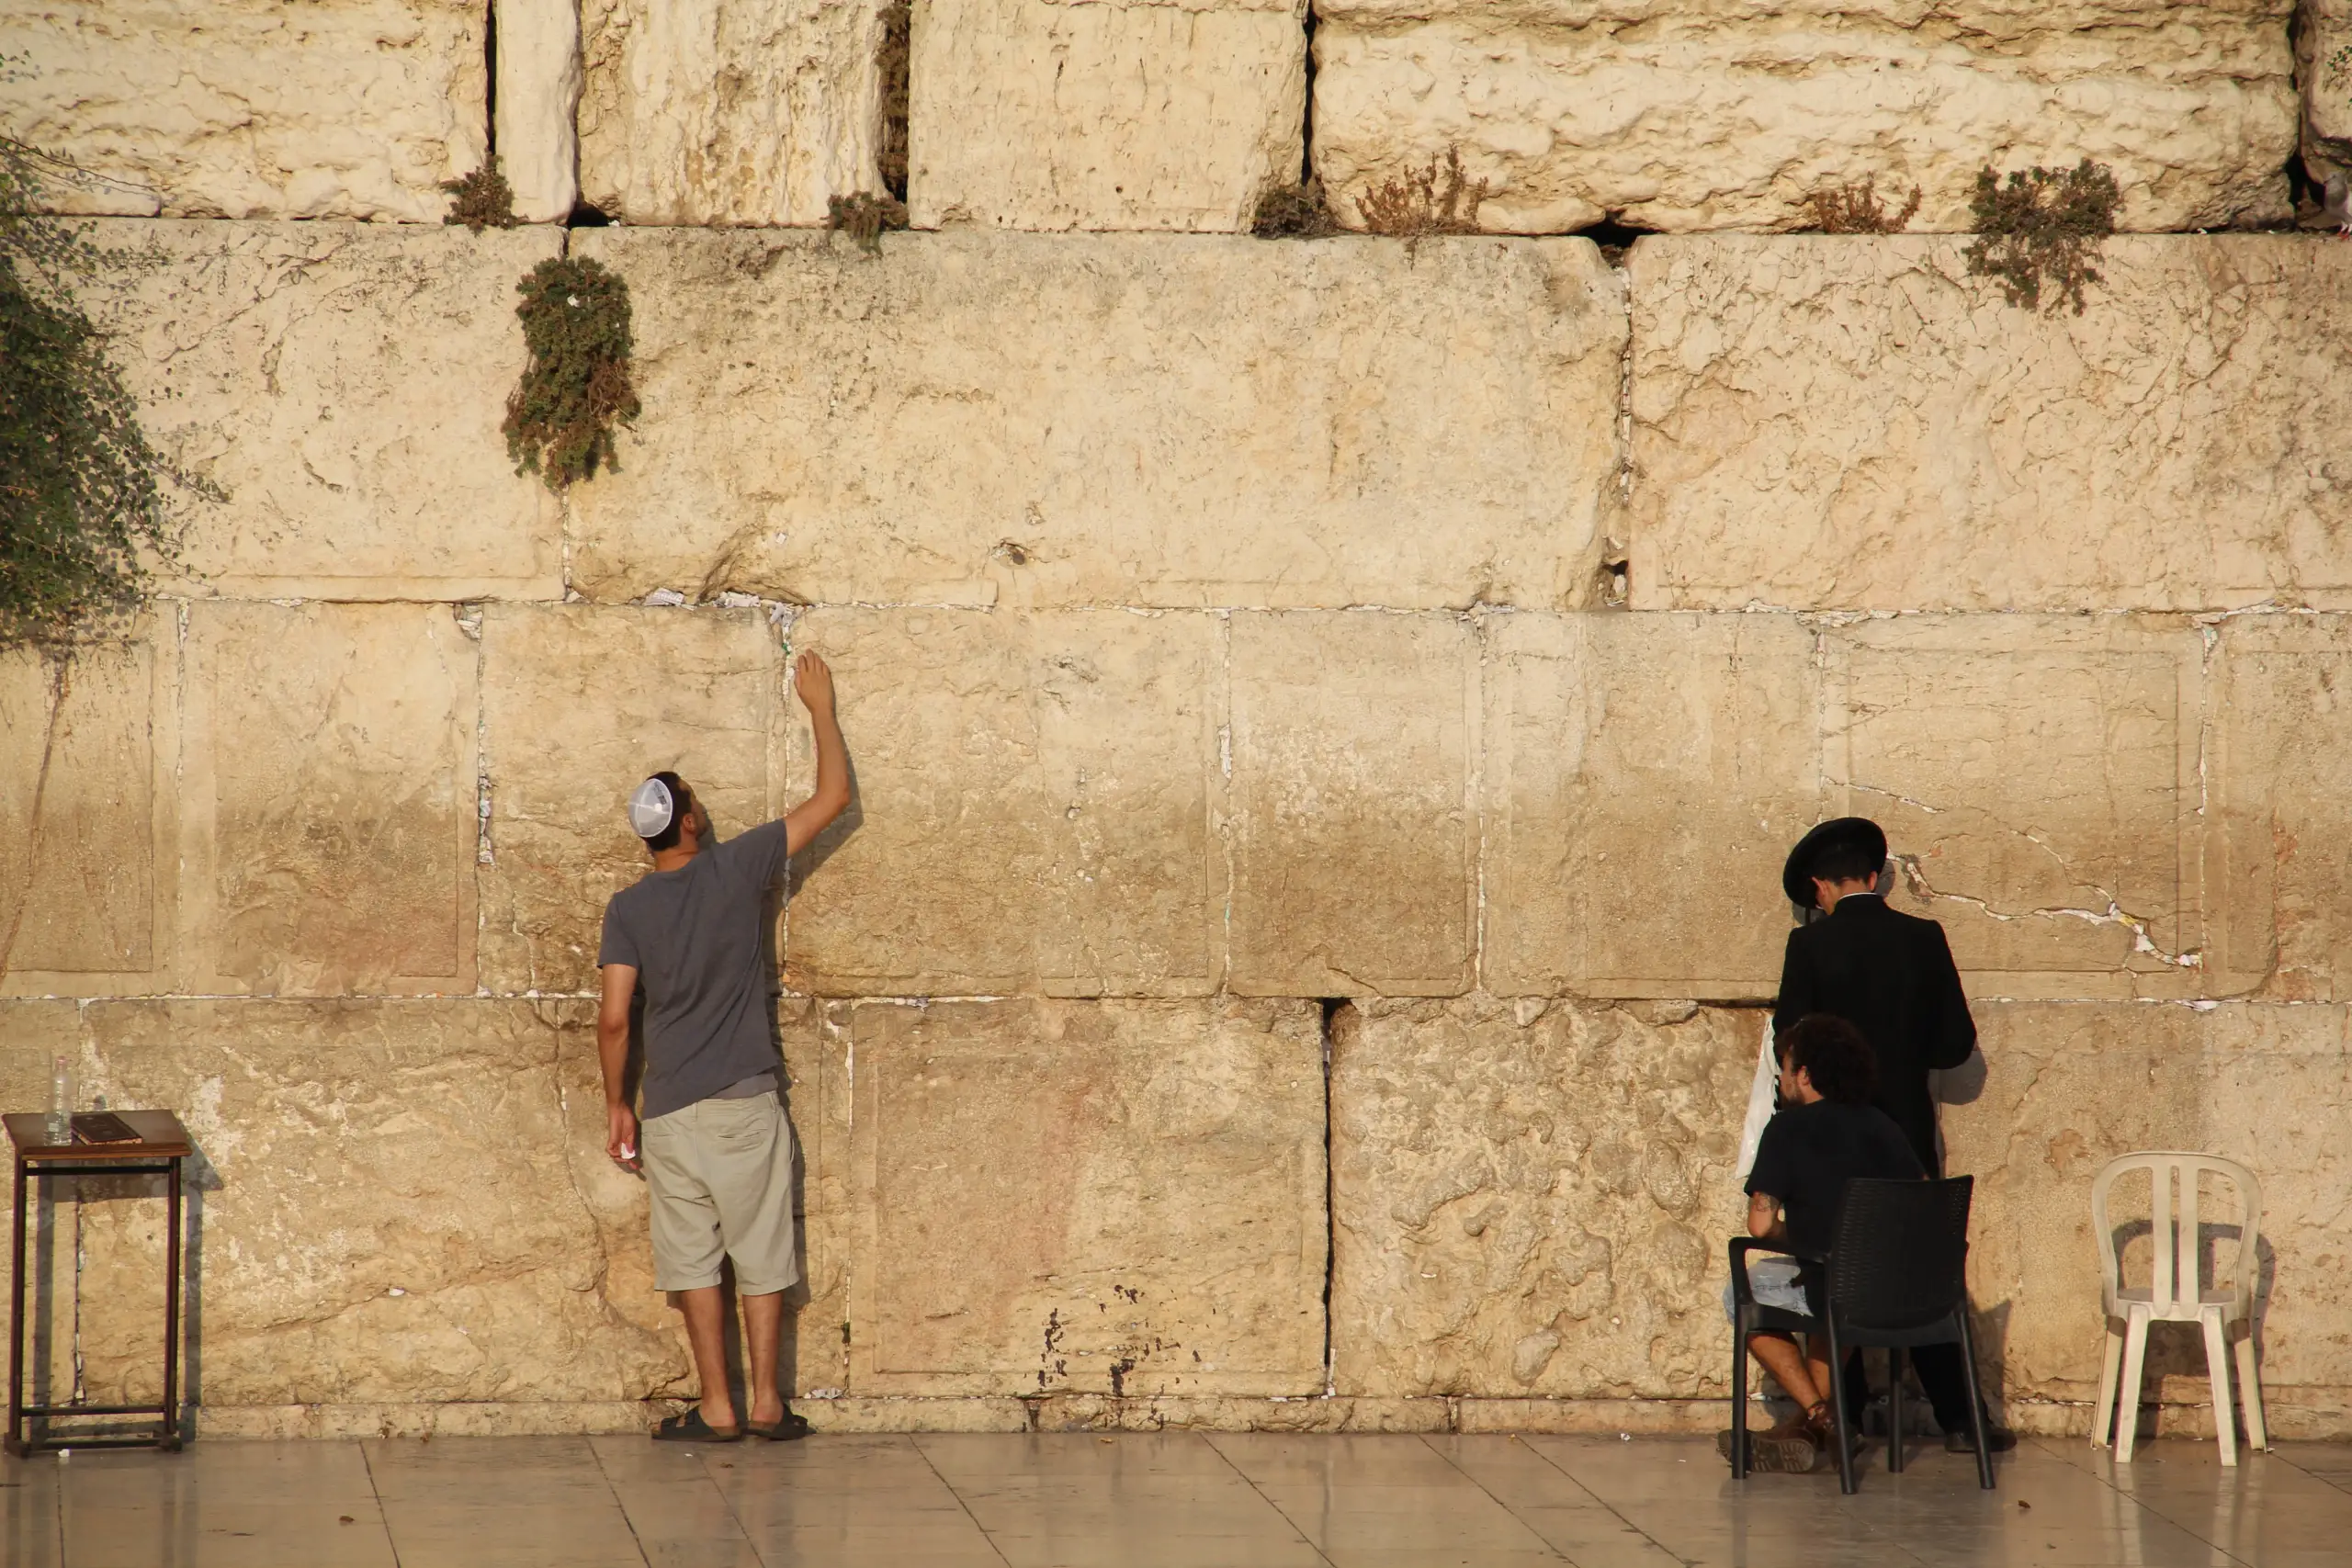 Yahudilerin Kutsal Mekanı: Ağlama Duvarı Hakkında 10 İlginç Bilgi